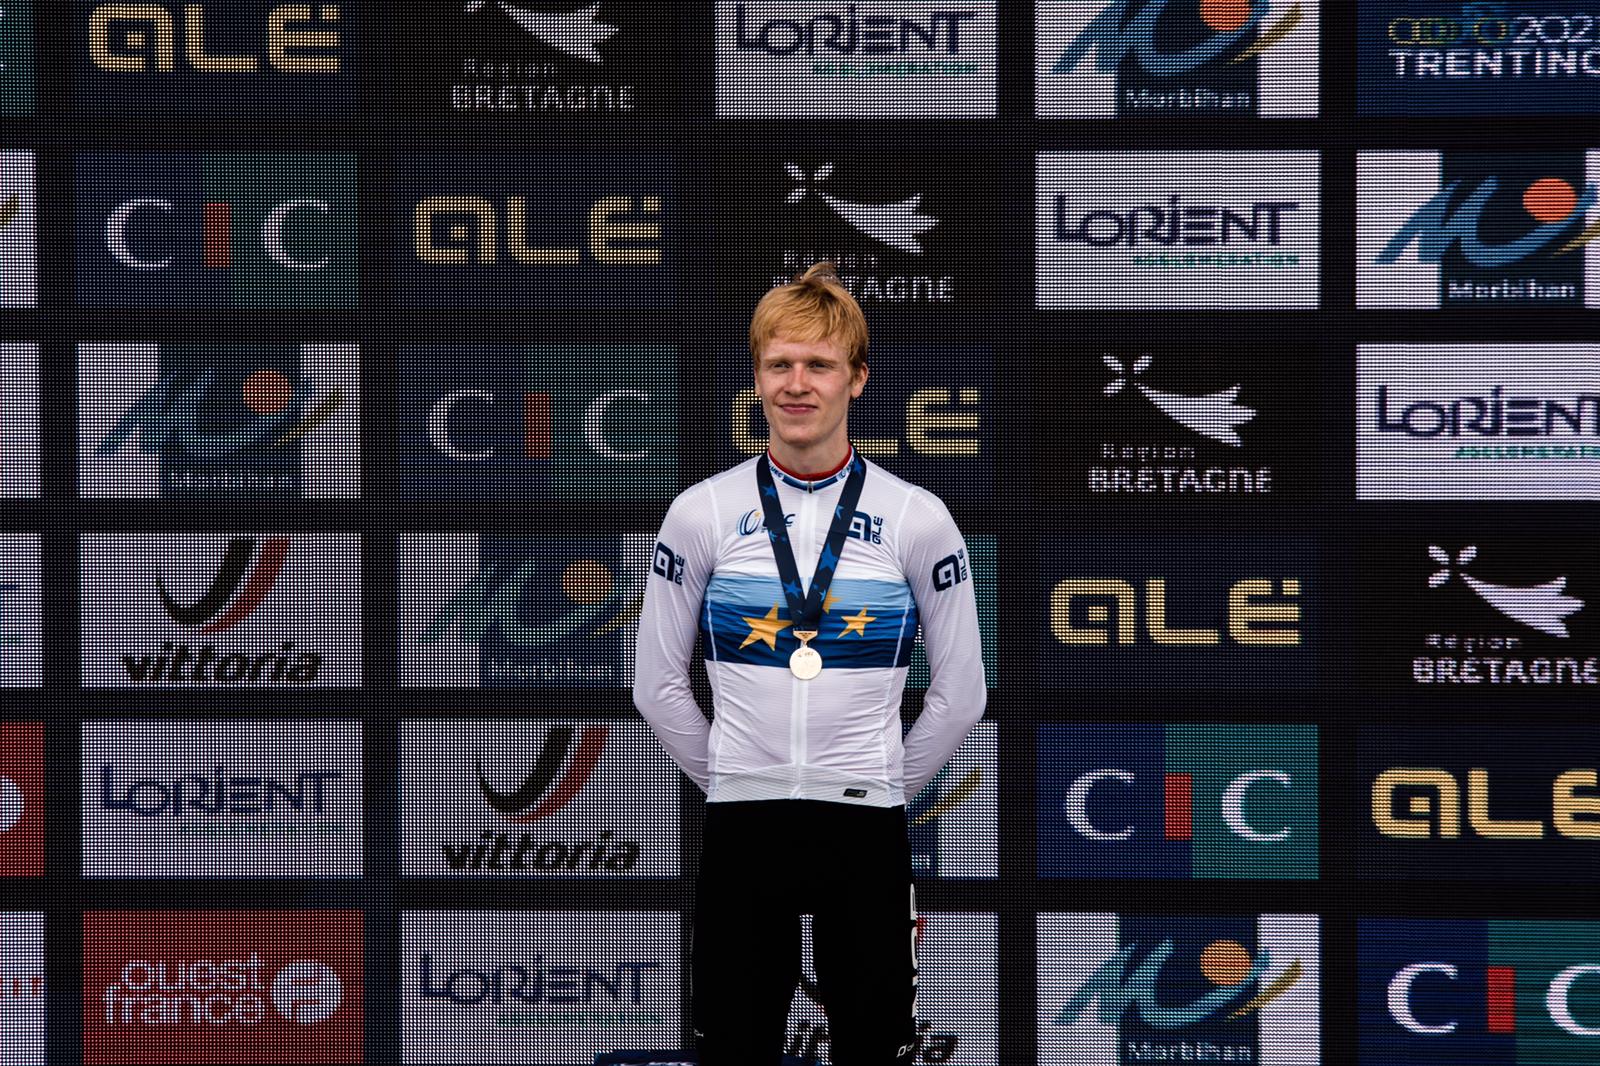 Andreas Leknessund vince il Campionato Europeo a cronometro Under 23 2020 (foto Twila Muzzi)